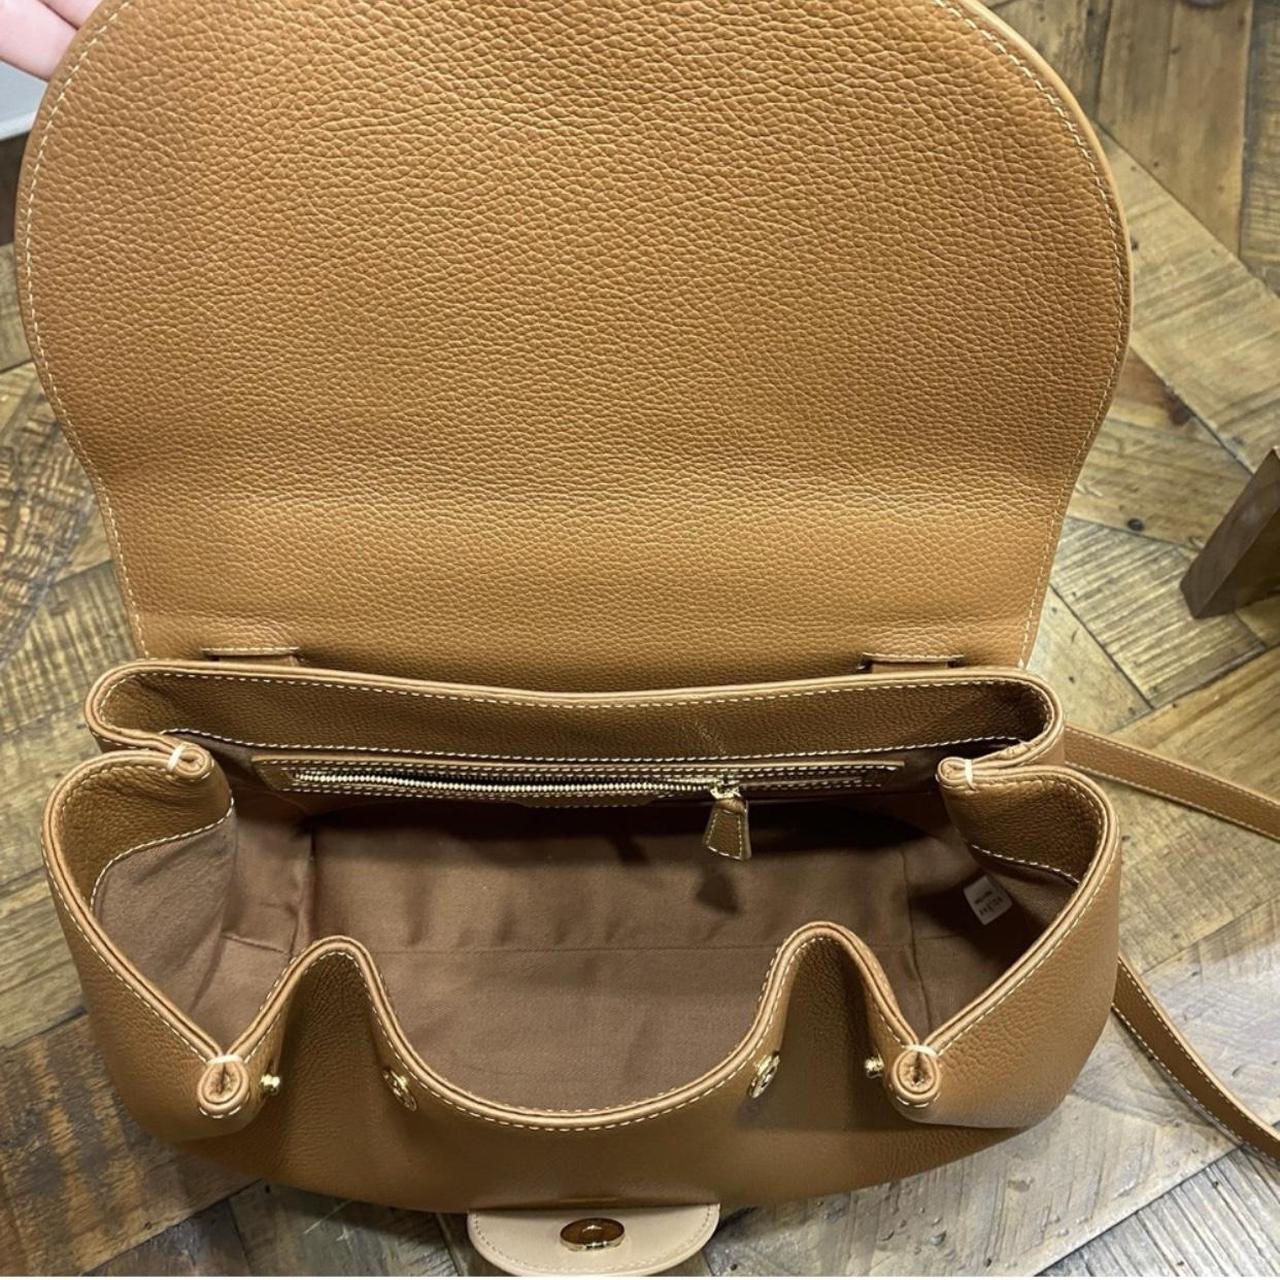 Numéro un leather handbag Polene Camel in Leather - 33639392